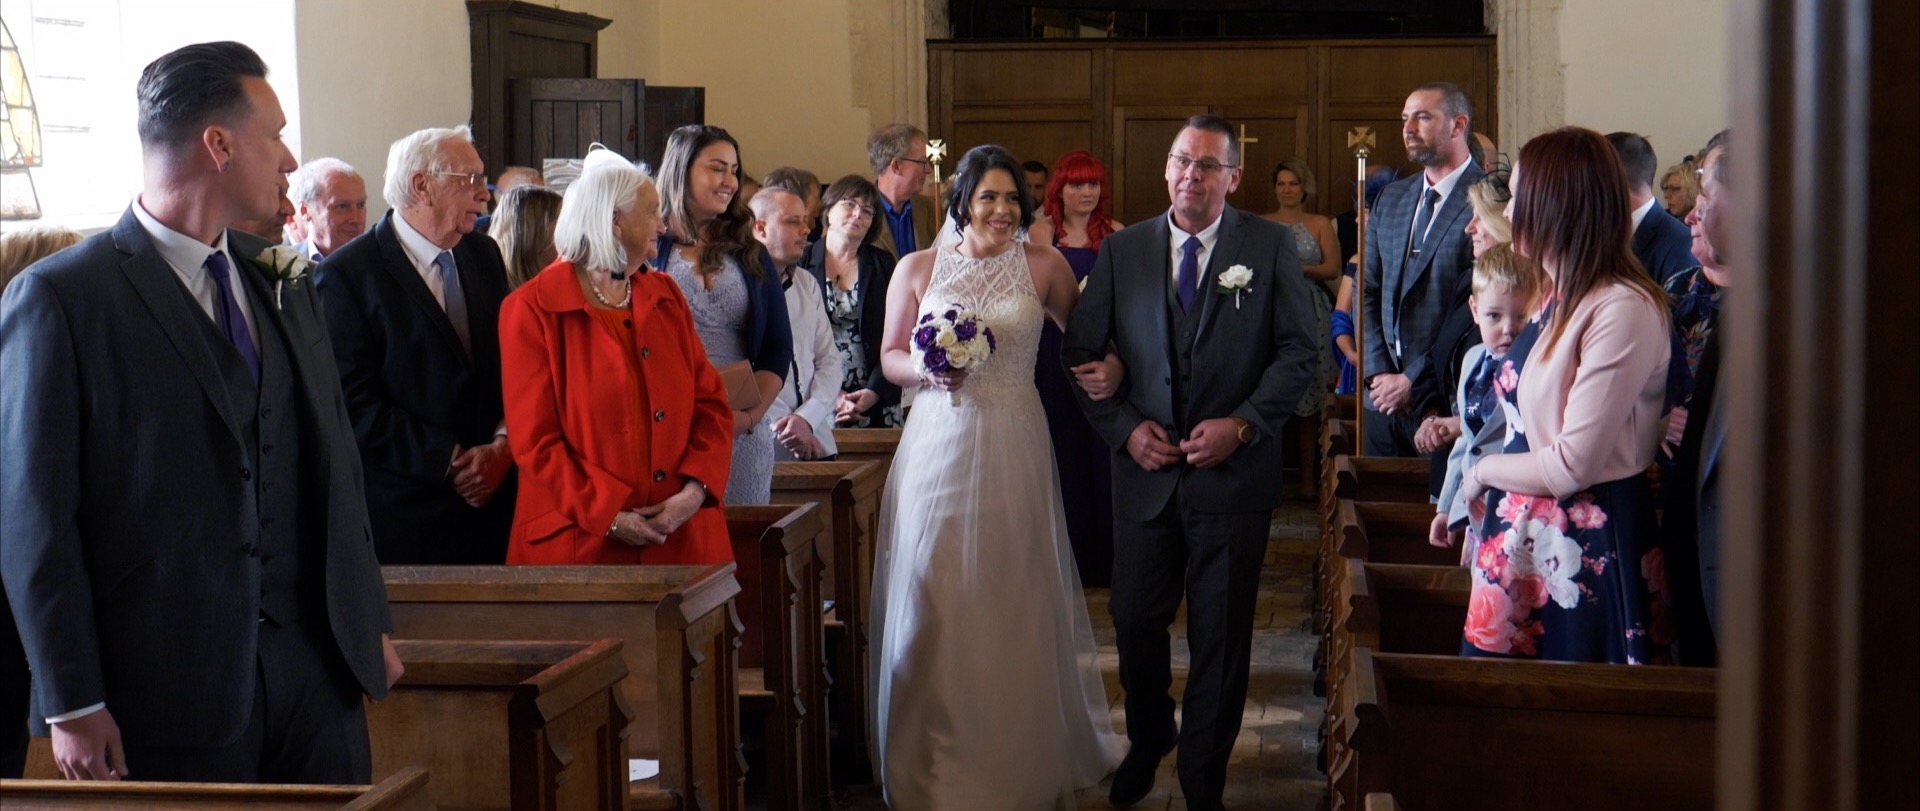 Saint Margaret's Chruch Wedding Video Essex.jpg